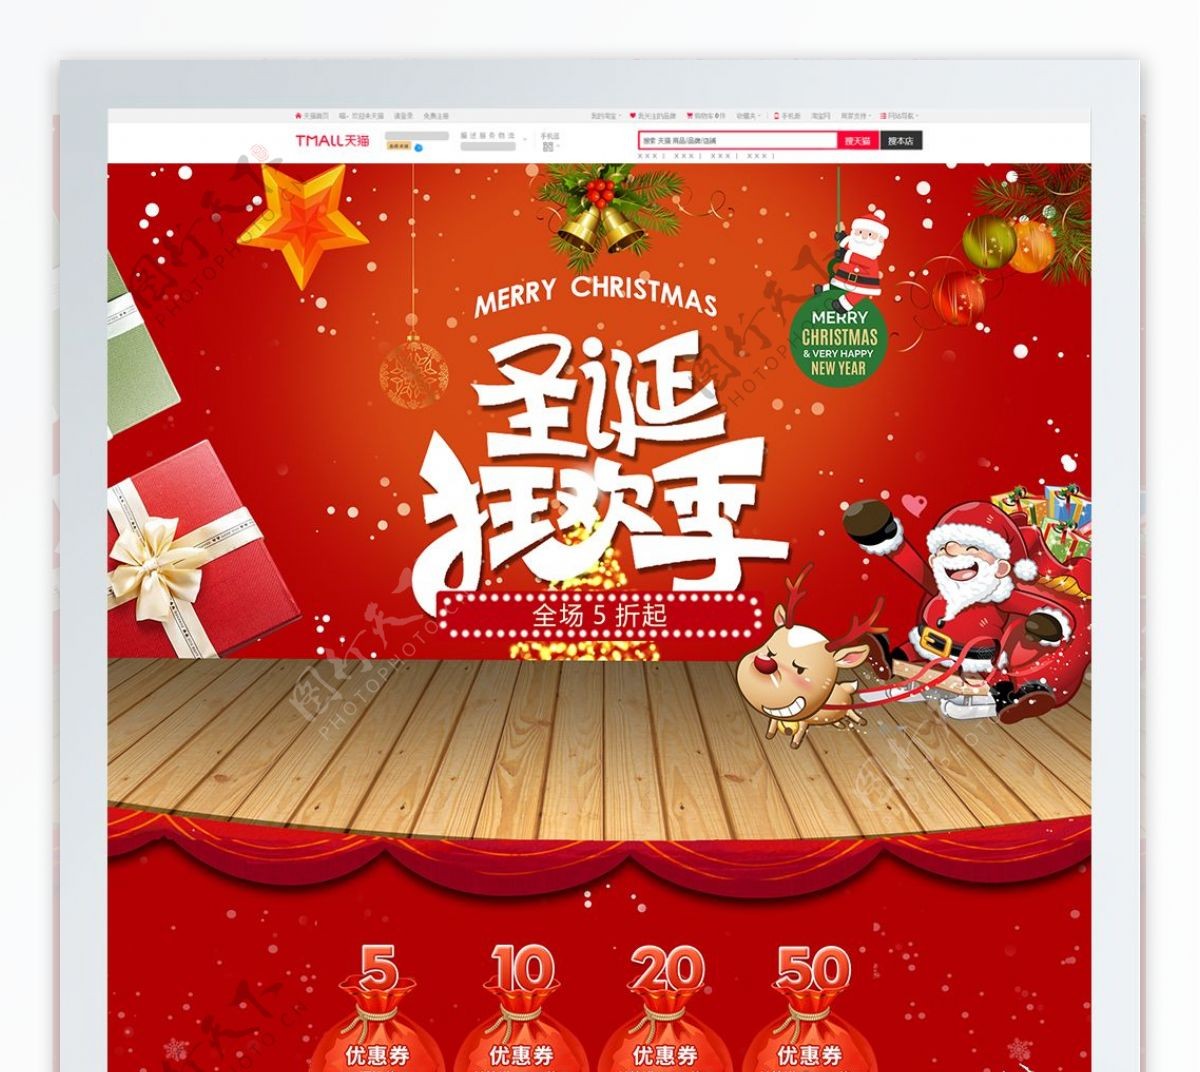 红色天猫淘宝促销圣诞节活动首页psd